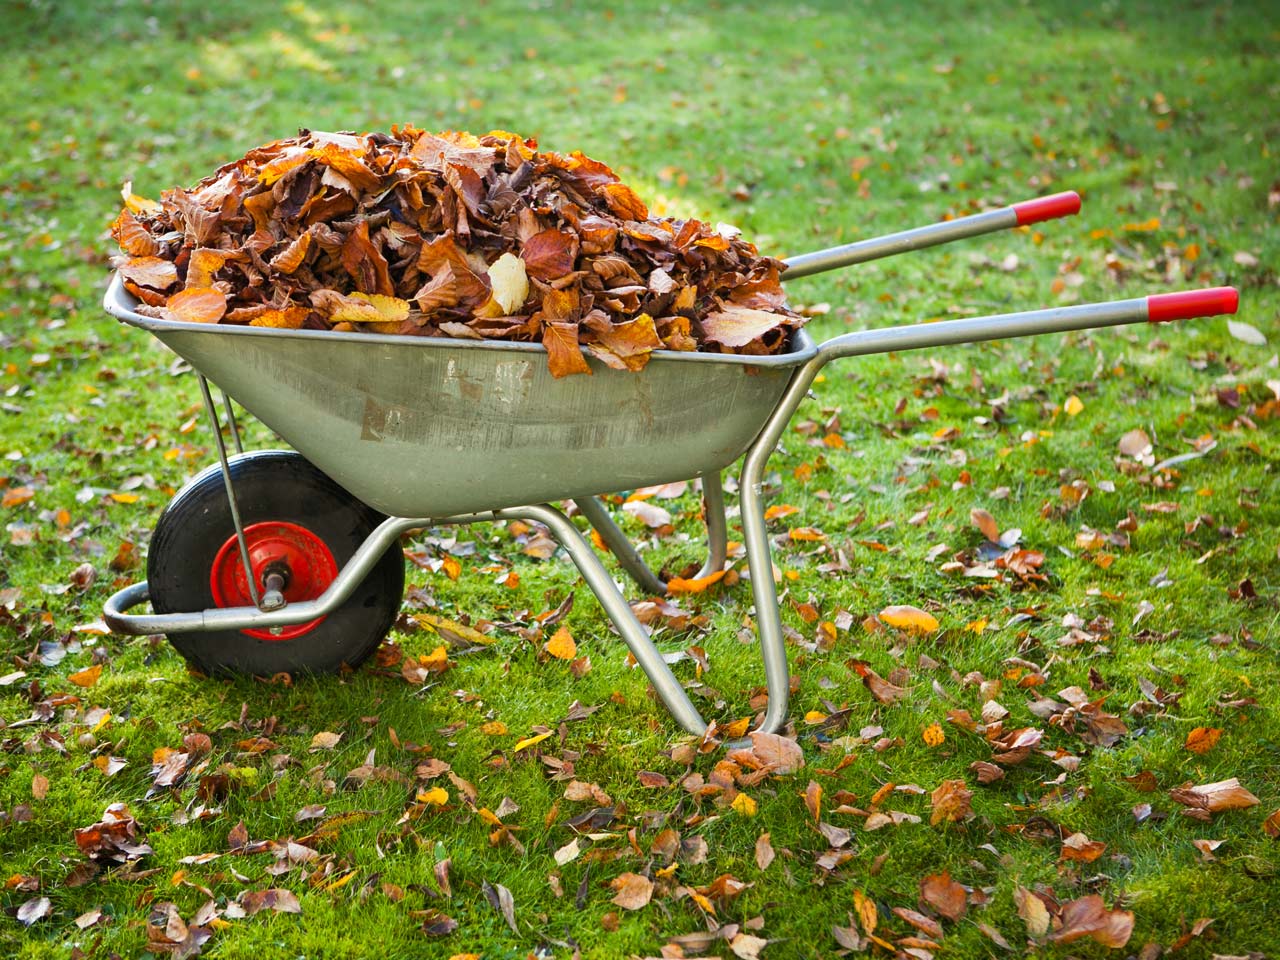 Wheelbarrow full of autumn leaves